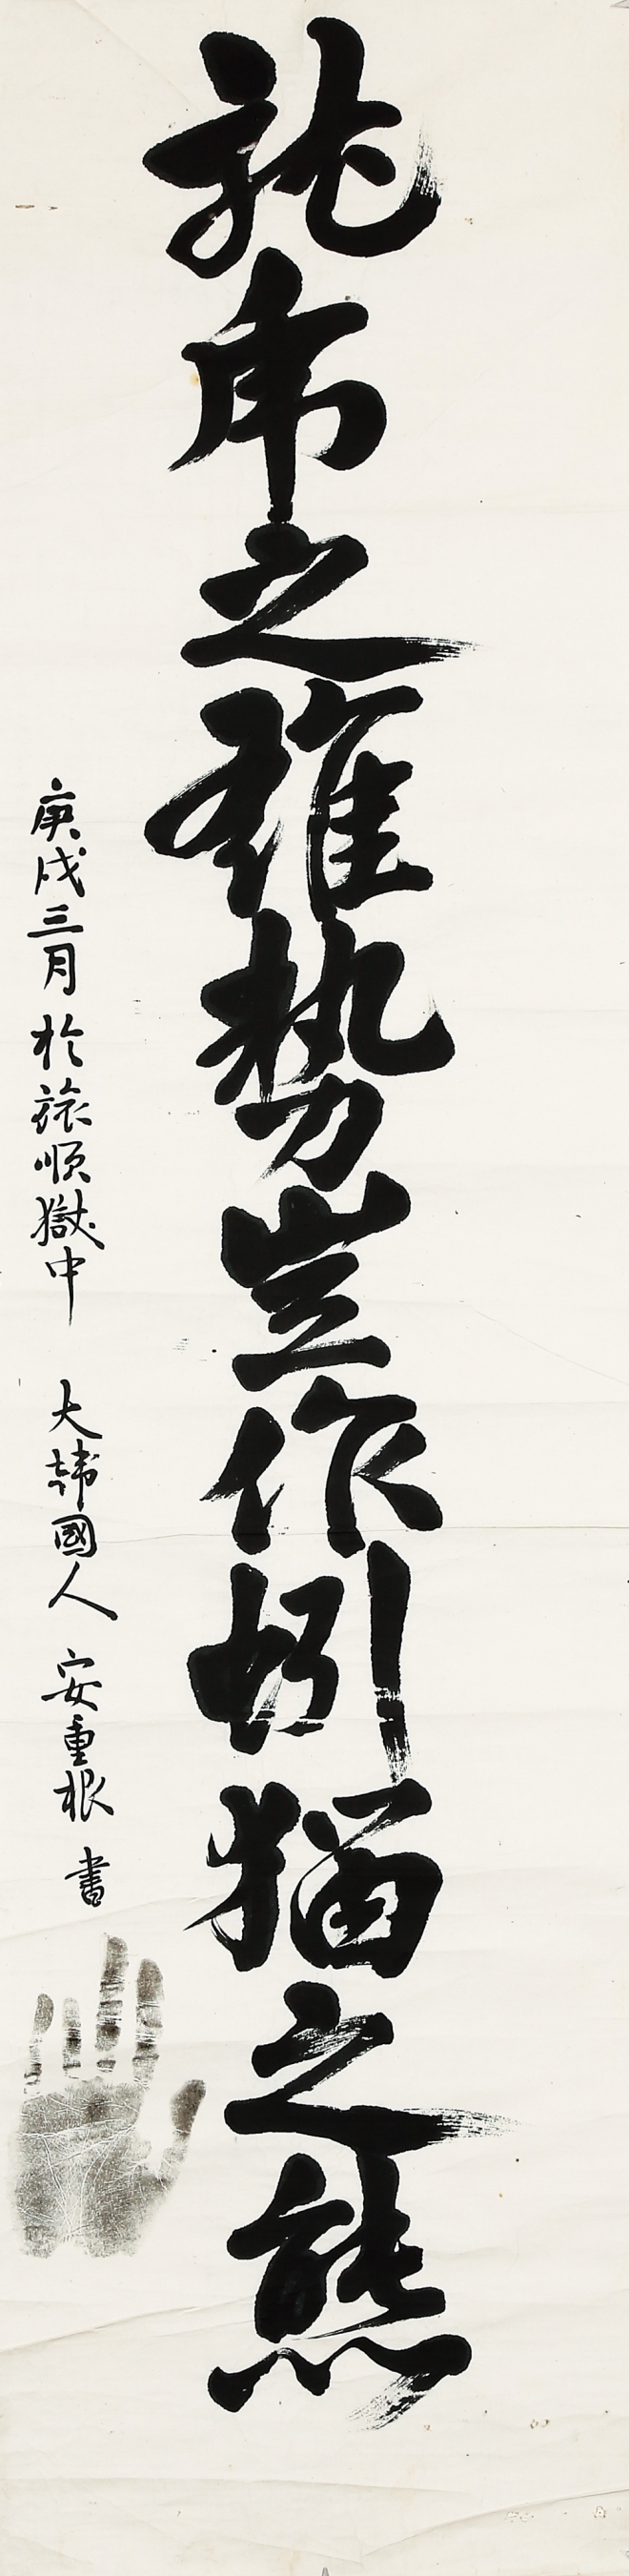 안중근, 용호지웅세기작인묘지태, ink on paper, 34×135cm, 1910년 3월. 서울옥션 제공